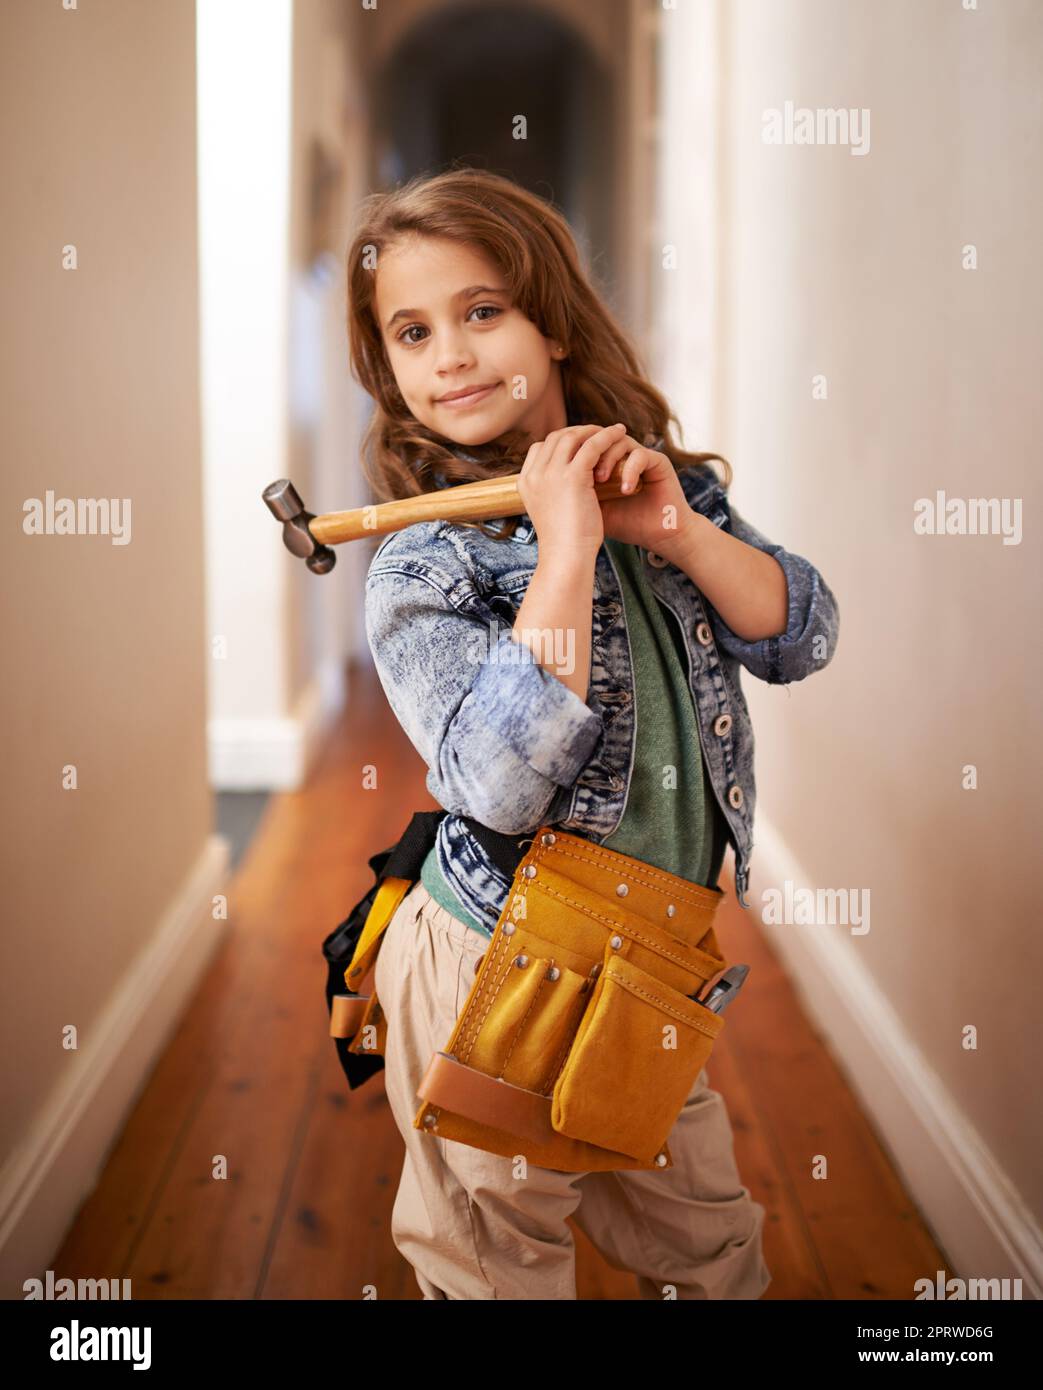 Può risolvere il problema. Ritratto di una giovane ragazza che indossa una cintura portautensili e tiene un martello. Foto Stock